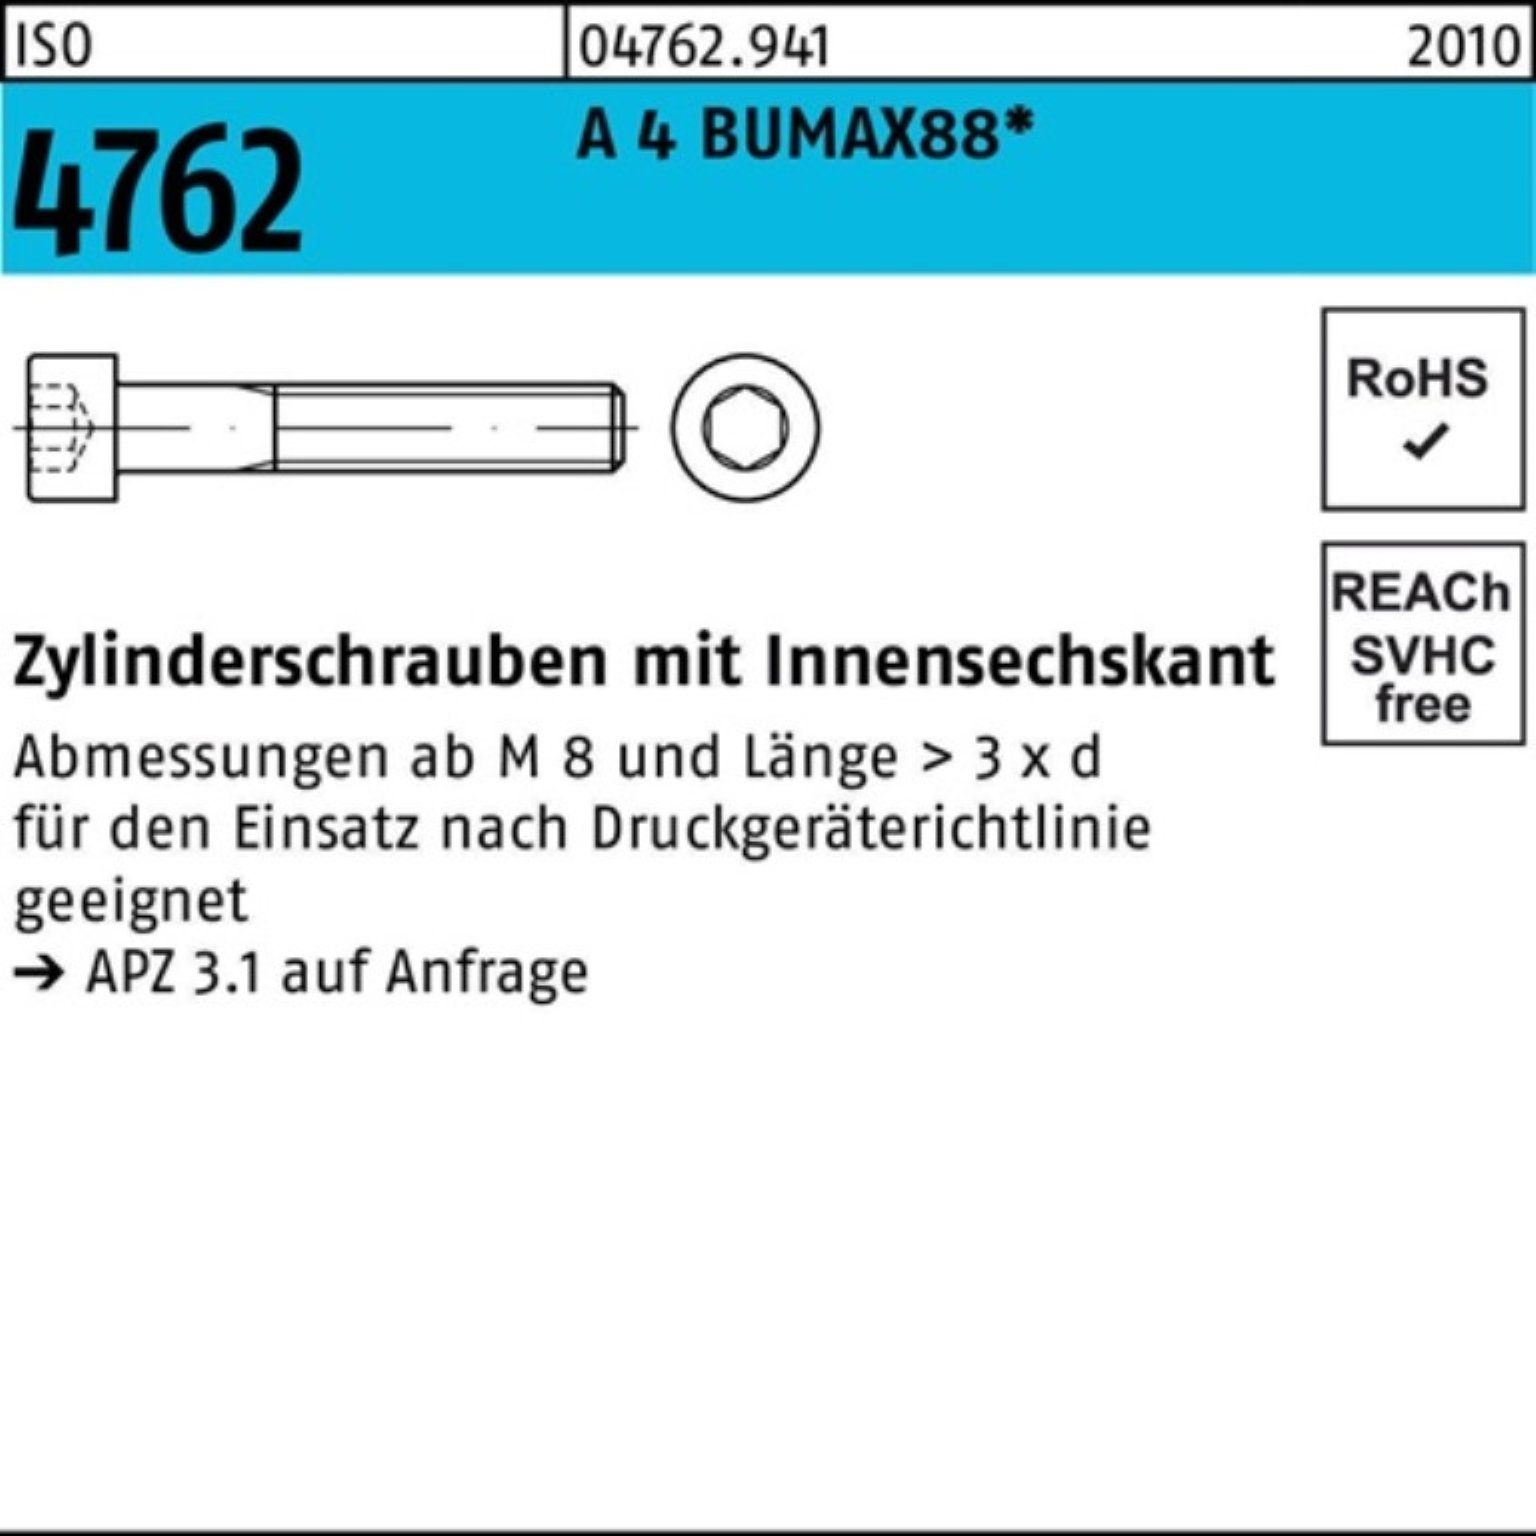 günstiger Verkauf Bufab Zylinderschraube 100er 50 4 Zylinderschraube Innen-6kt 35 Pack A M8x BUMAX88 4762 S ISO